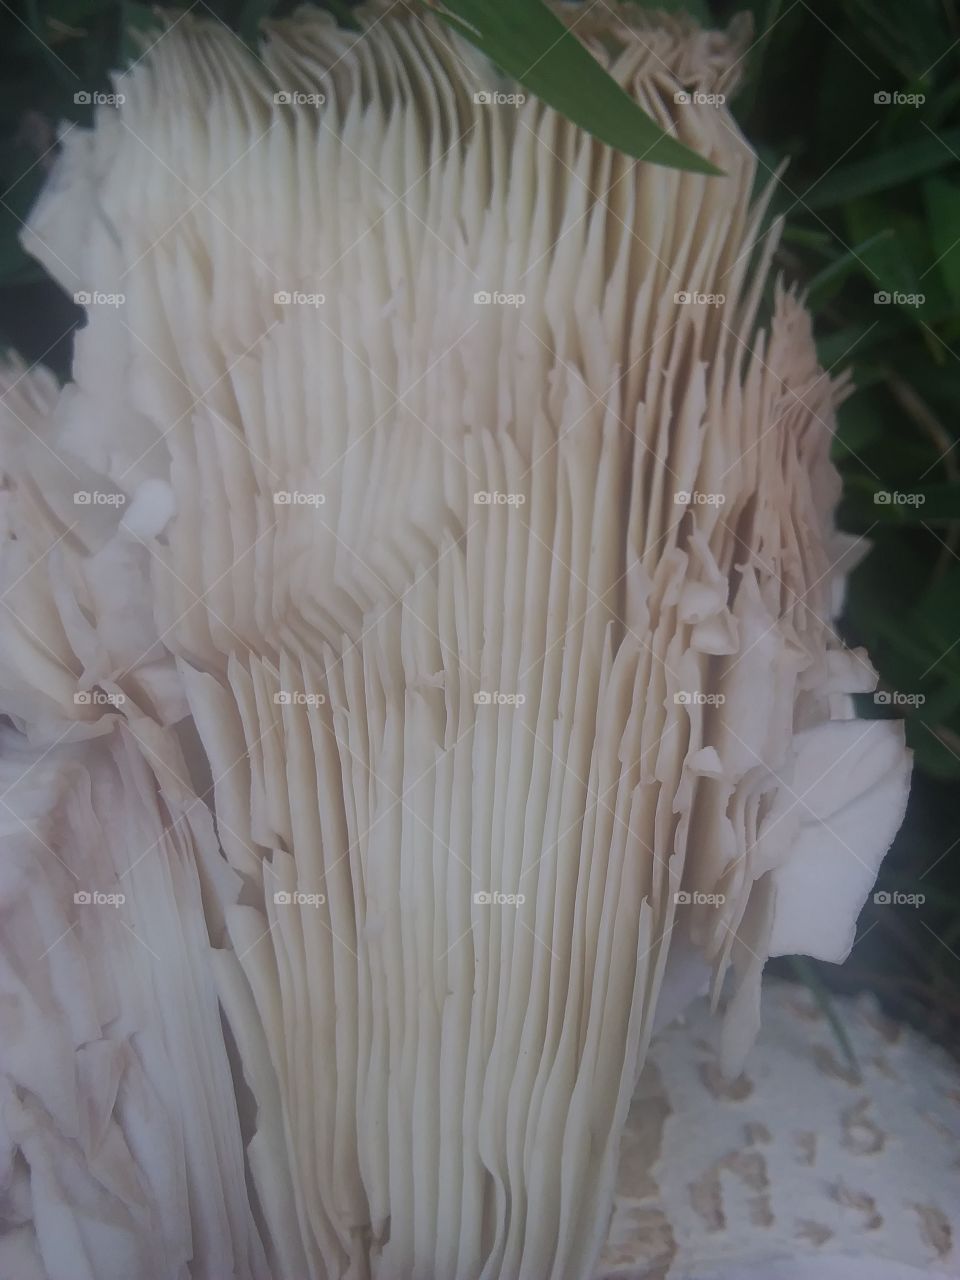 underneath a mushroom